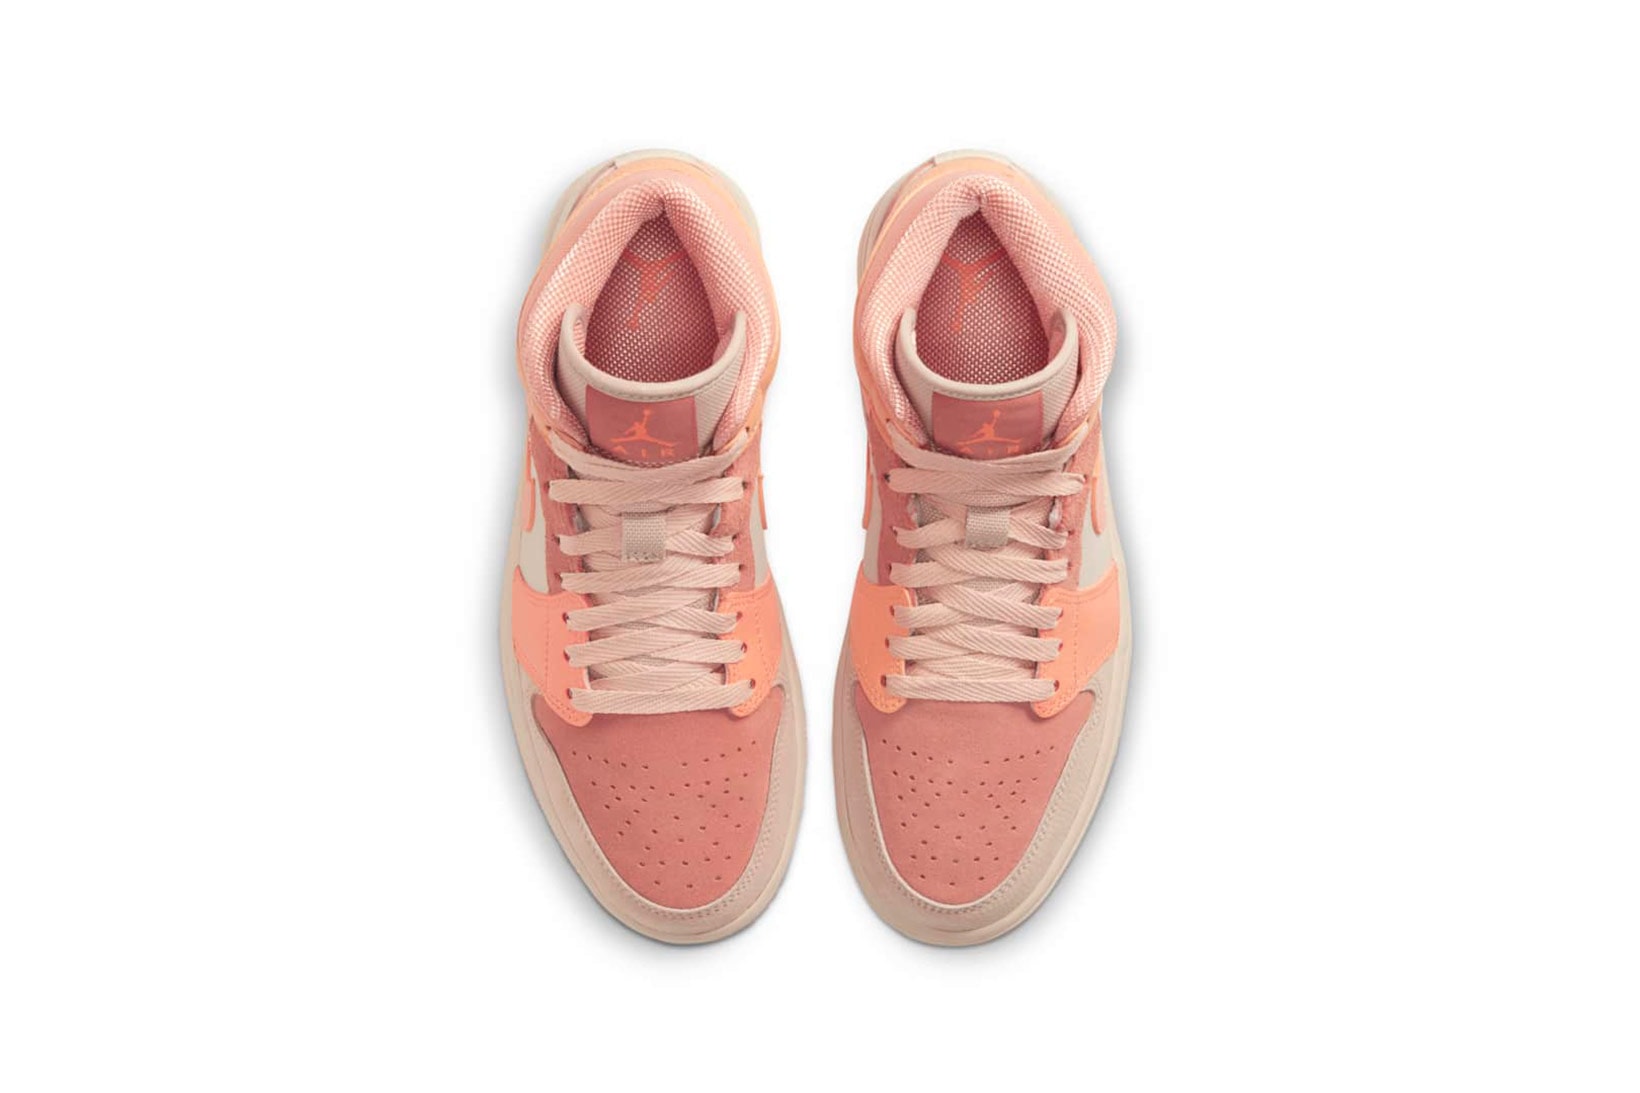 nike air jordan 1 aj1 mid womens sneakers apricot orange pink colorway shoes footwear sneakerhead kicks aerial birds eye view insole